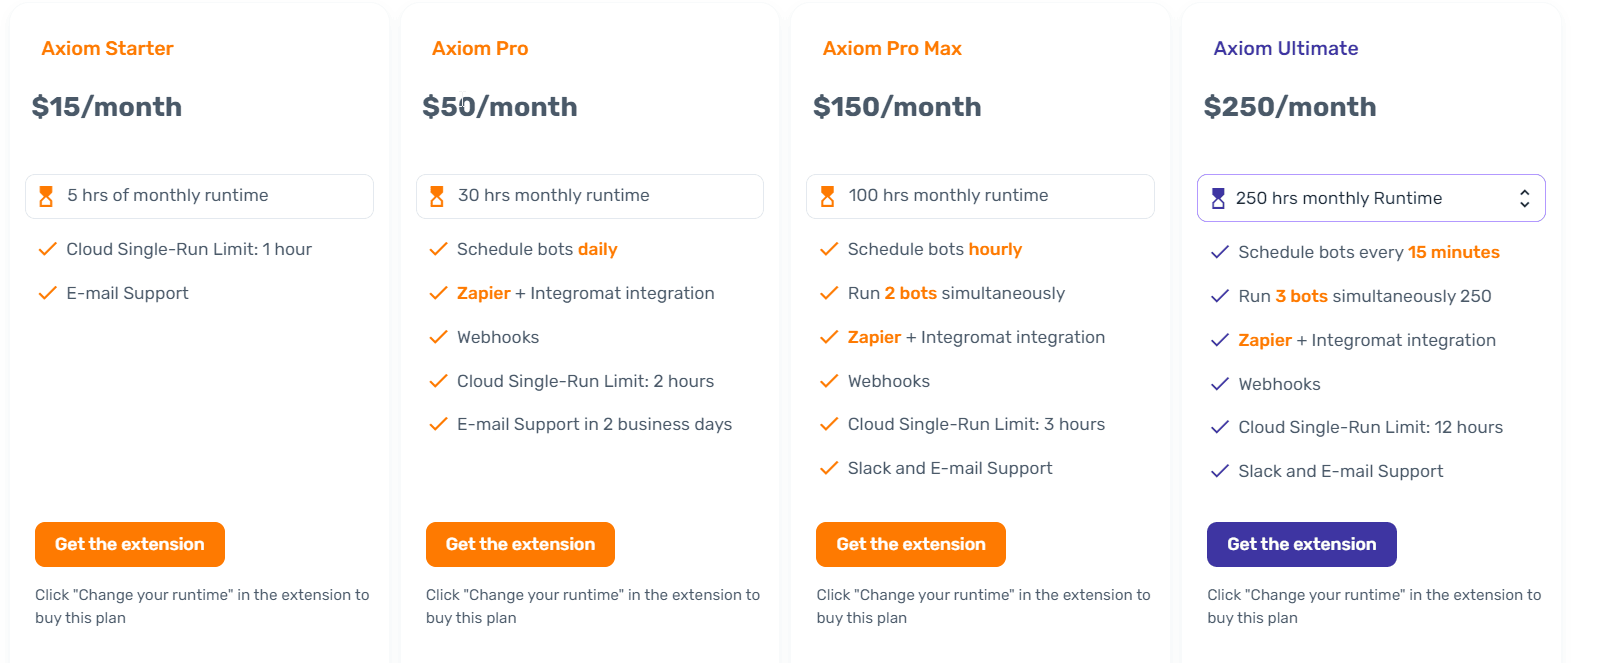 axiom pricing - image3.png